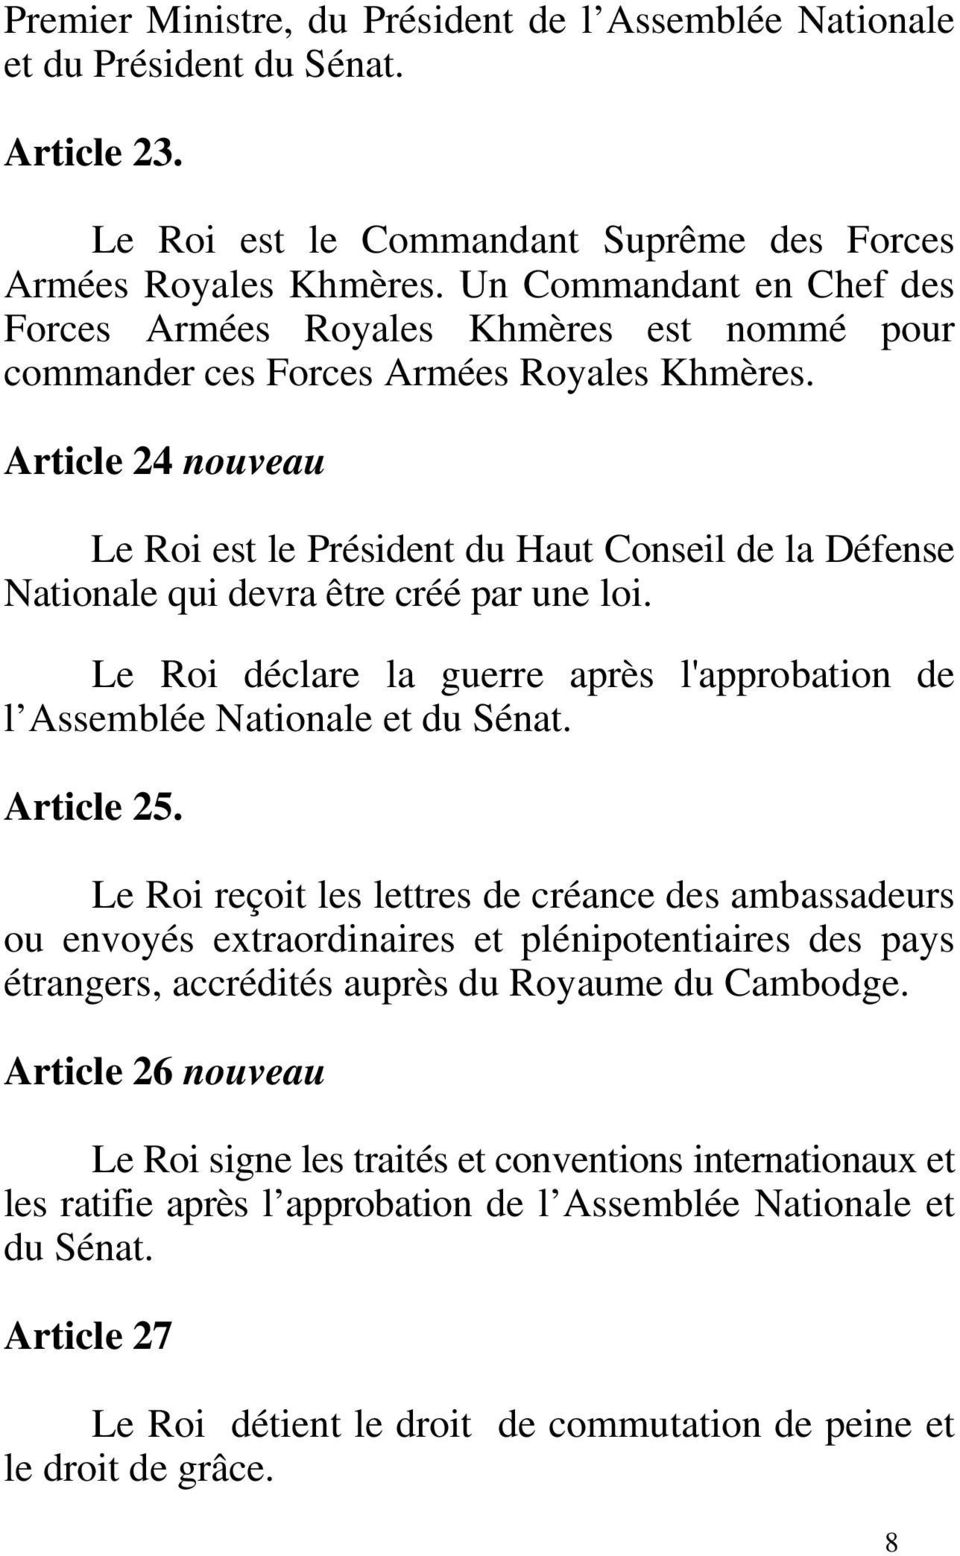 Article 24 nouveau Le Roi est le Président du Haut Conseil de la Défense Nationale qui devra être créé par une loi. Le Roi déclare la guerre après l'approbation de l Assemblée Nationale et du Sénat.